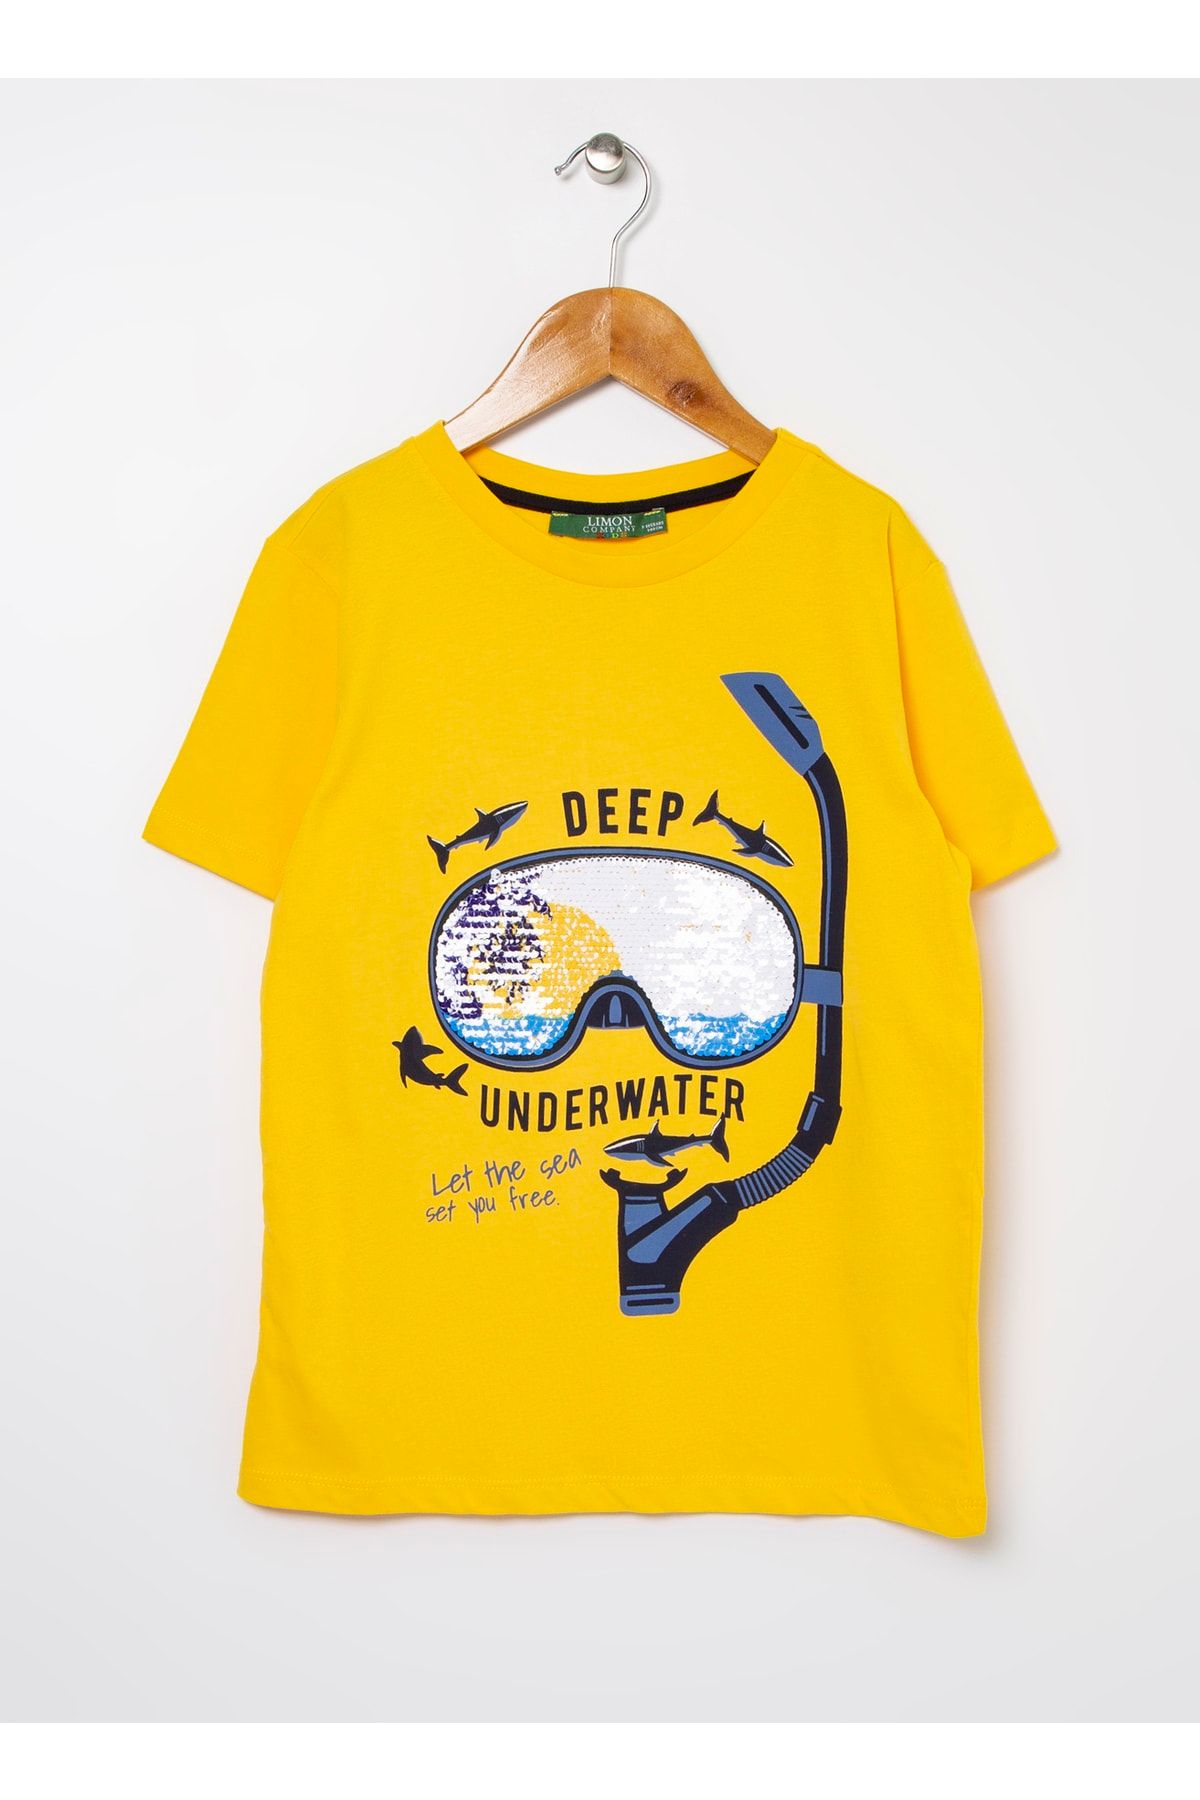 LİMON COMPANY Limon Kısa Kollu Baskılı Erkek Çocuk T-shirt